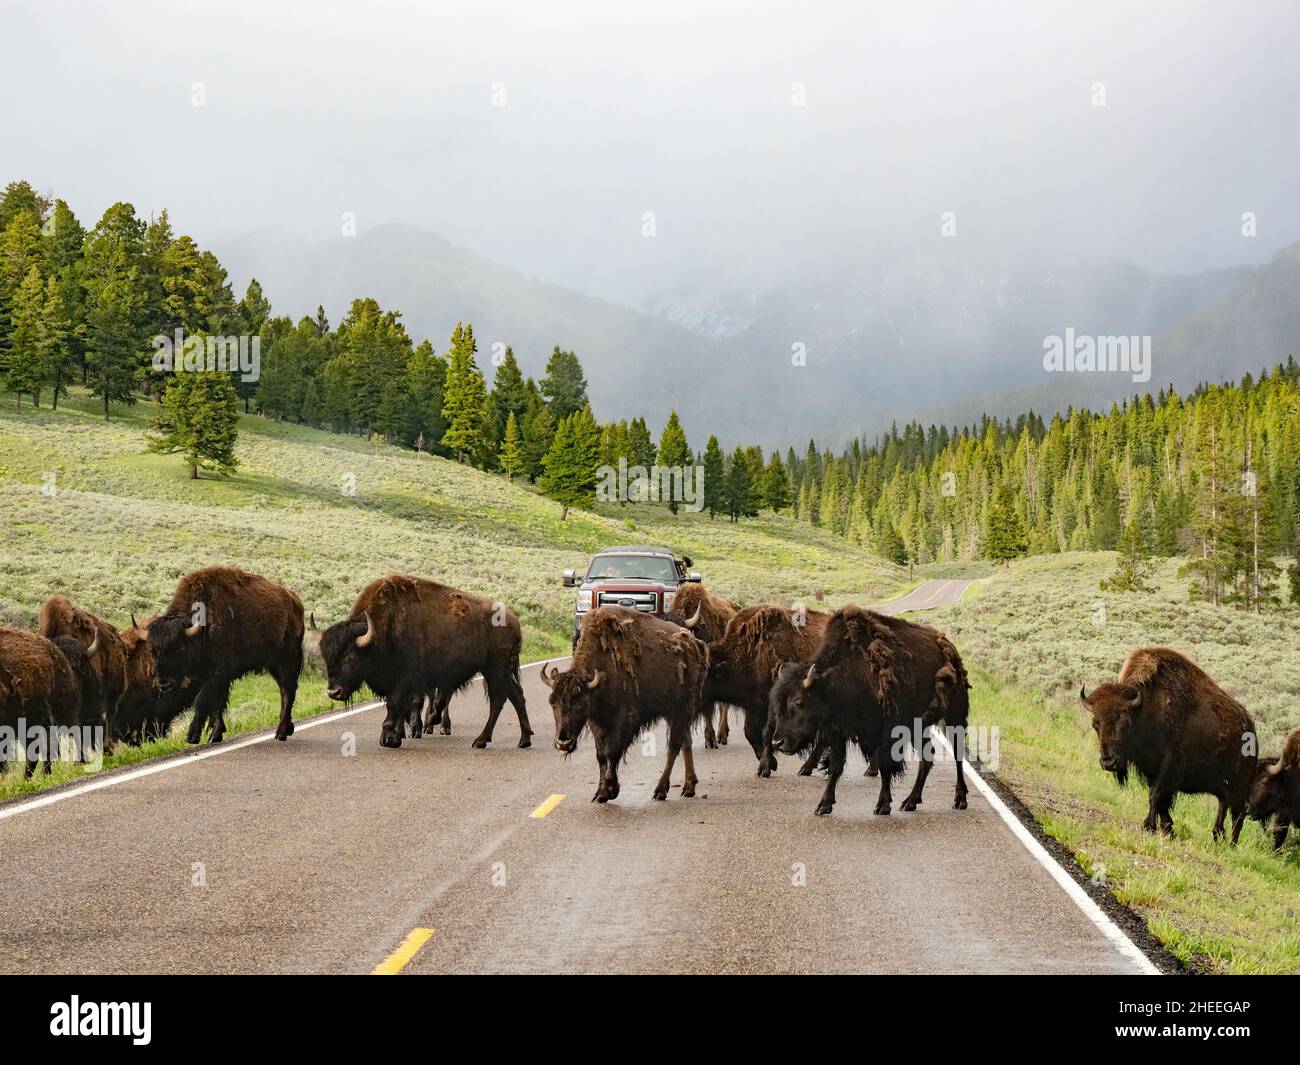 Bison adulte, Bison bison, traversant la route dans le parc national de Yellowstone, Wyoming. Banque D'Images